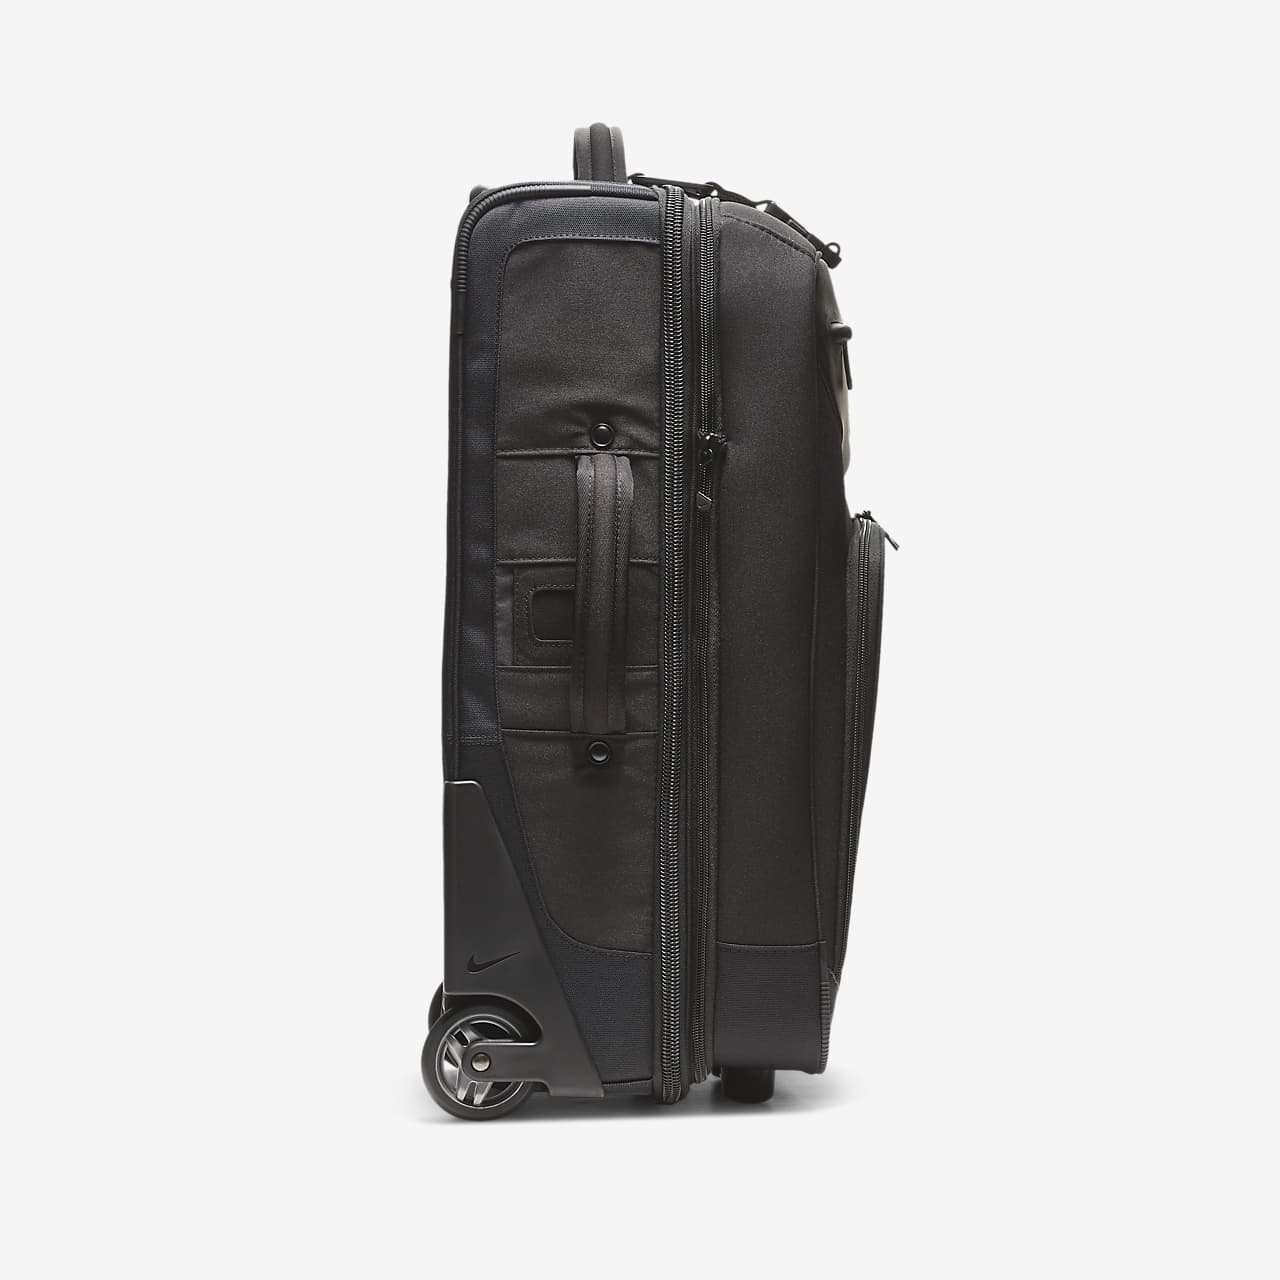 nike travel suitcase